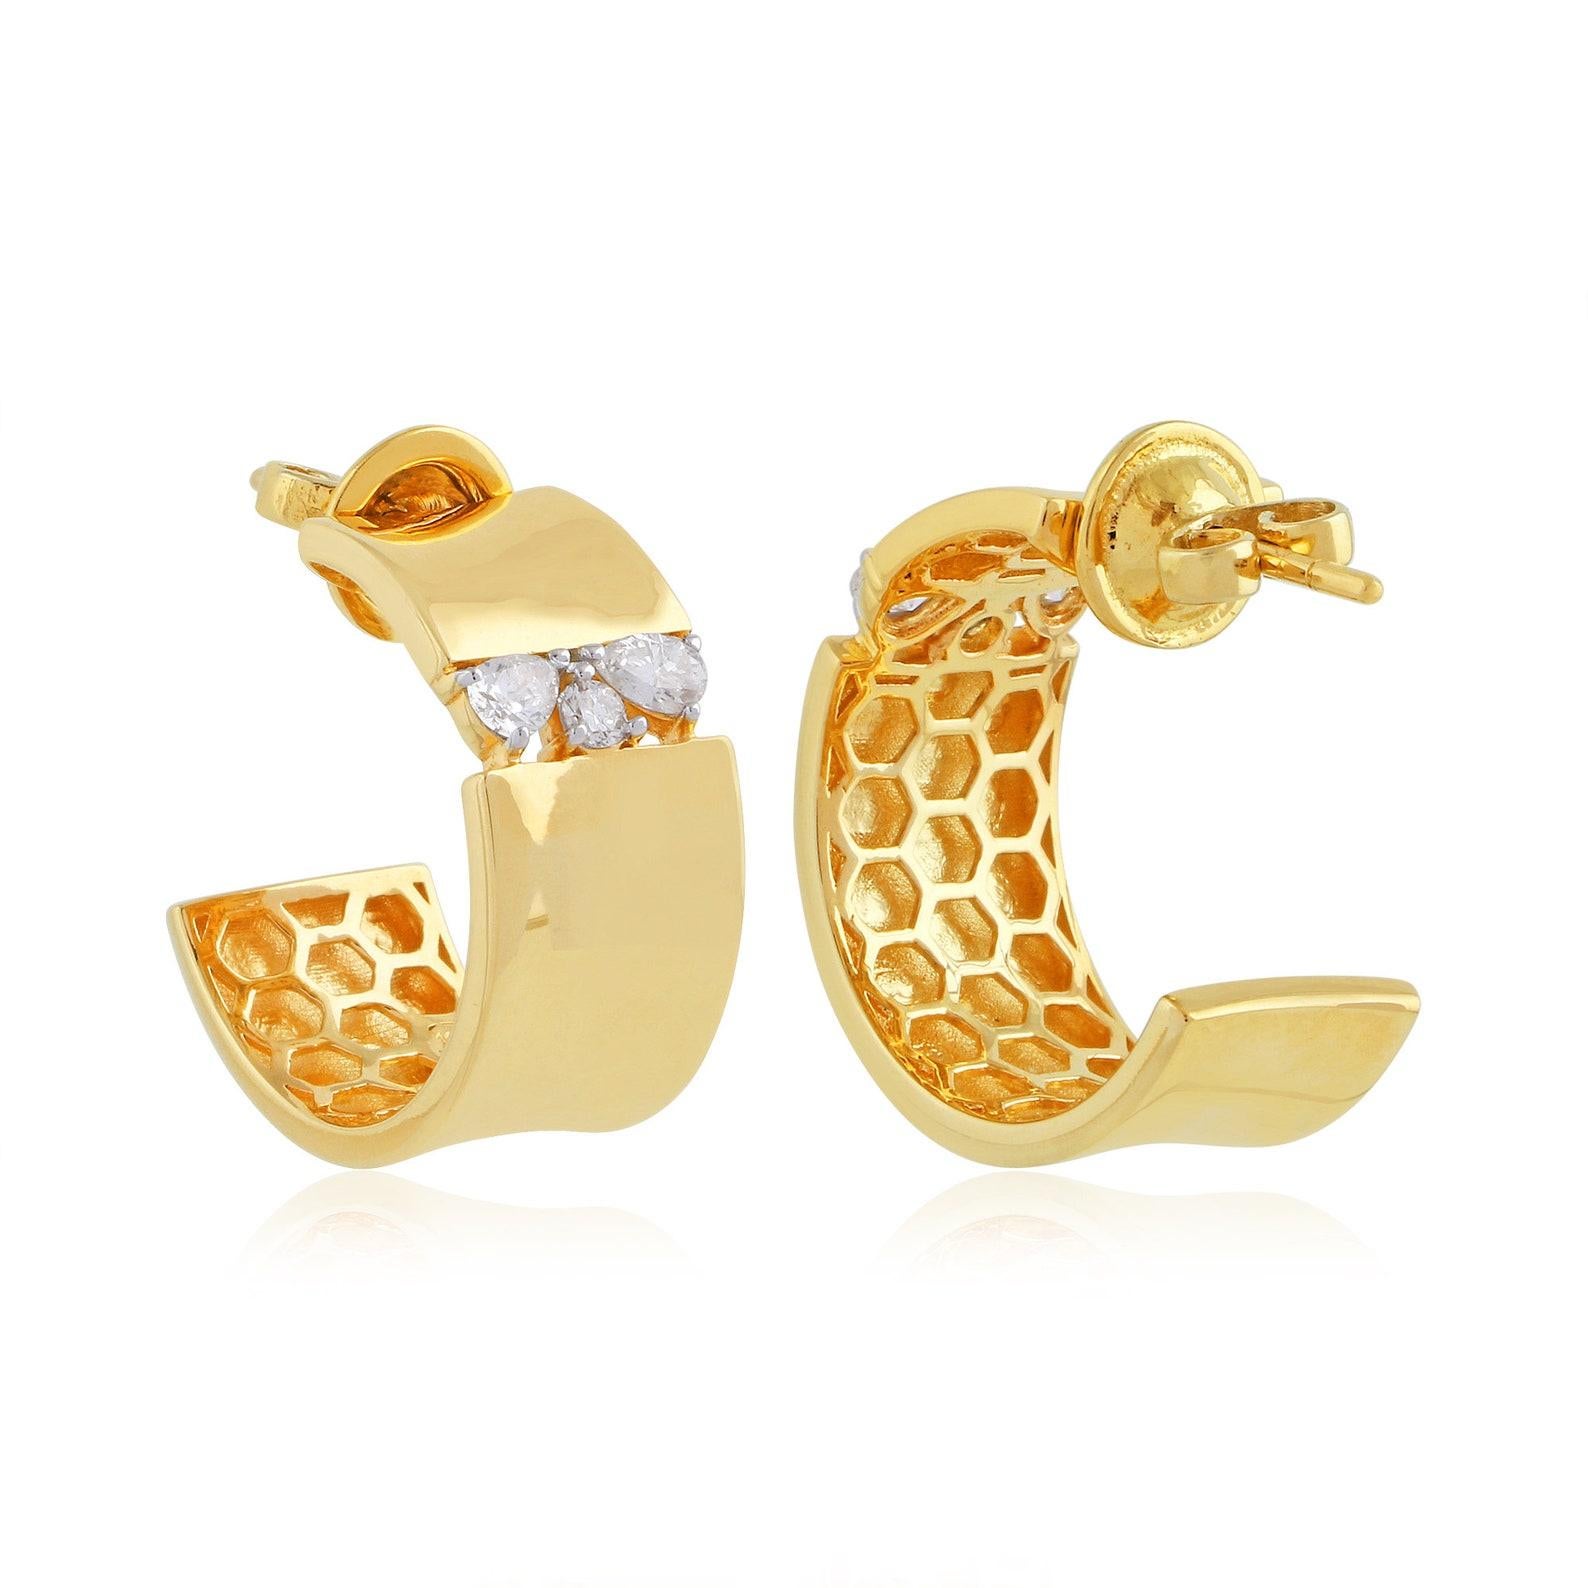 Diese wunderschönen Ohrringe sind aus 14-karätigem Gold gegossen und von Hand mit 0,60 Karat Diamanten besetzt.  Erhältlich in Rosé-, Gelb- und Weißgold

FOLLOW MEGHNA JEWELS Storefront, um die neueste Kollektion und exklusive Stücke zu sehen.